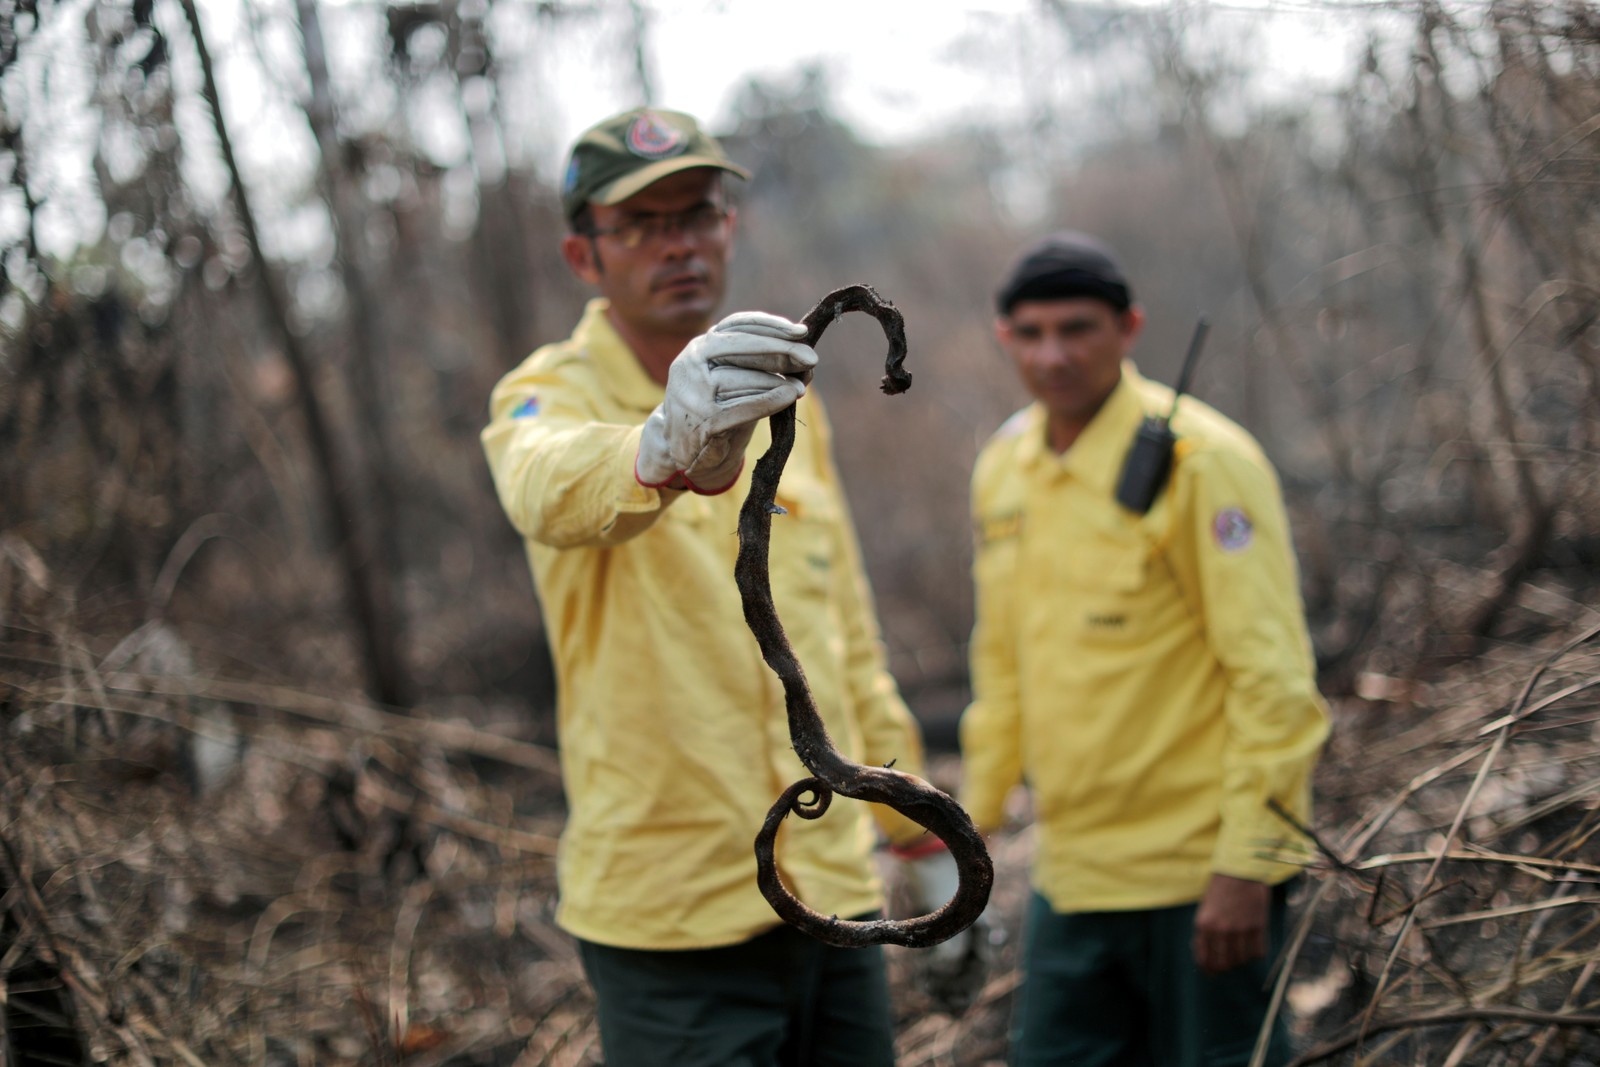 Membro da brigada de incêndio do Instituto Brasileiro do Meio Ambiente e dos Recursos Naturais Renováveis (Ibama) tenta controlar um incêndio, em uma área da floresta amazônica, em Apuí, no AmazonasREUTERS